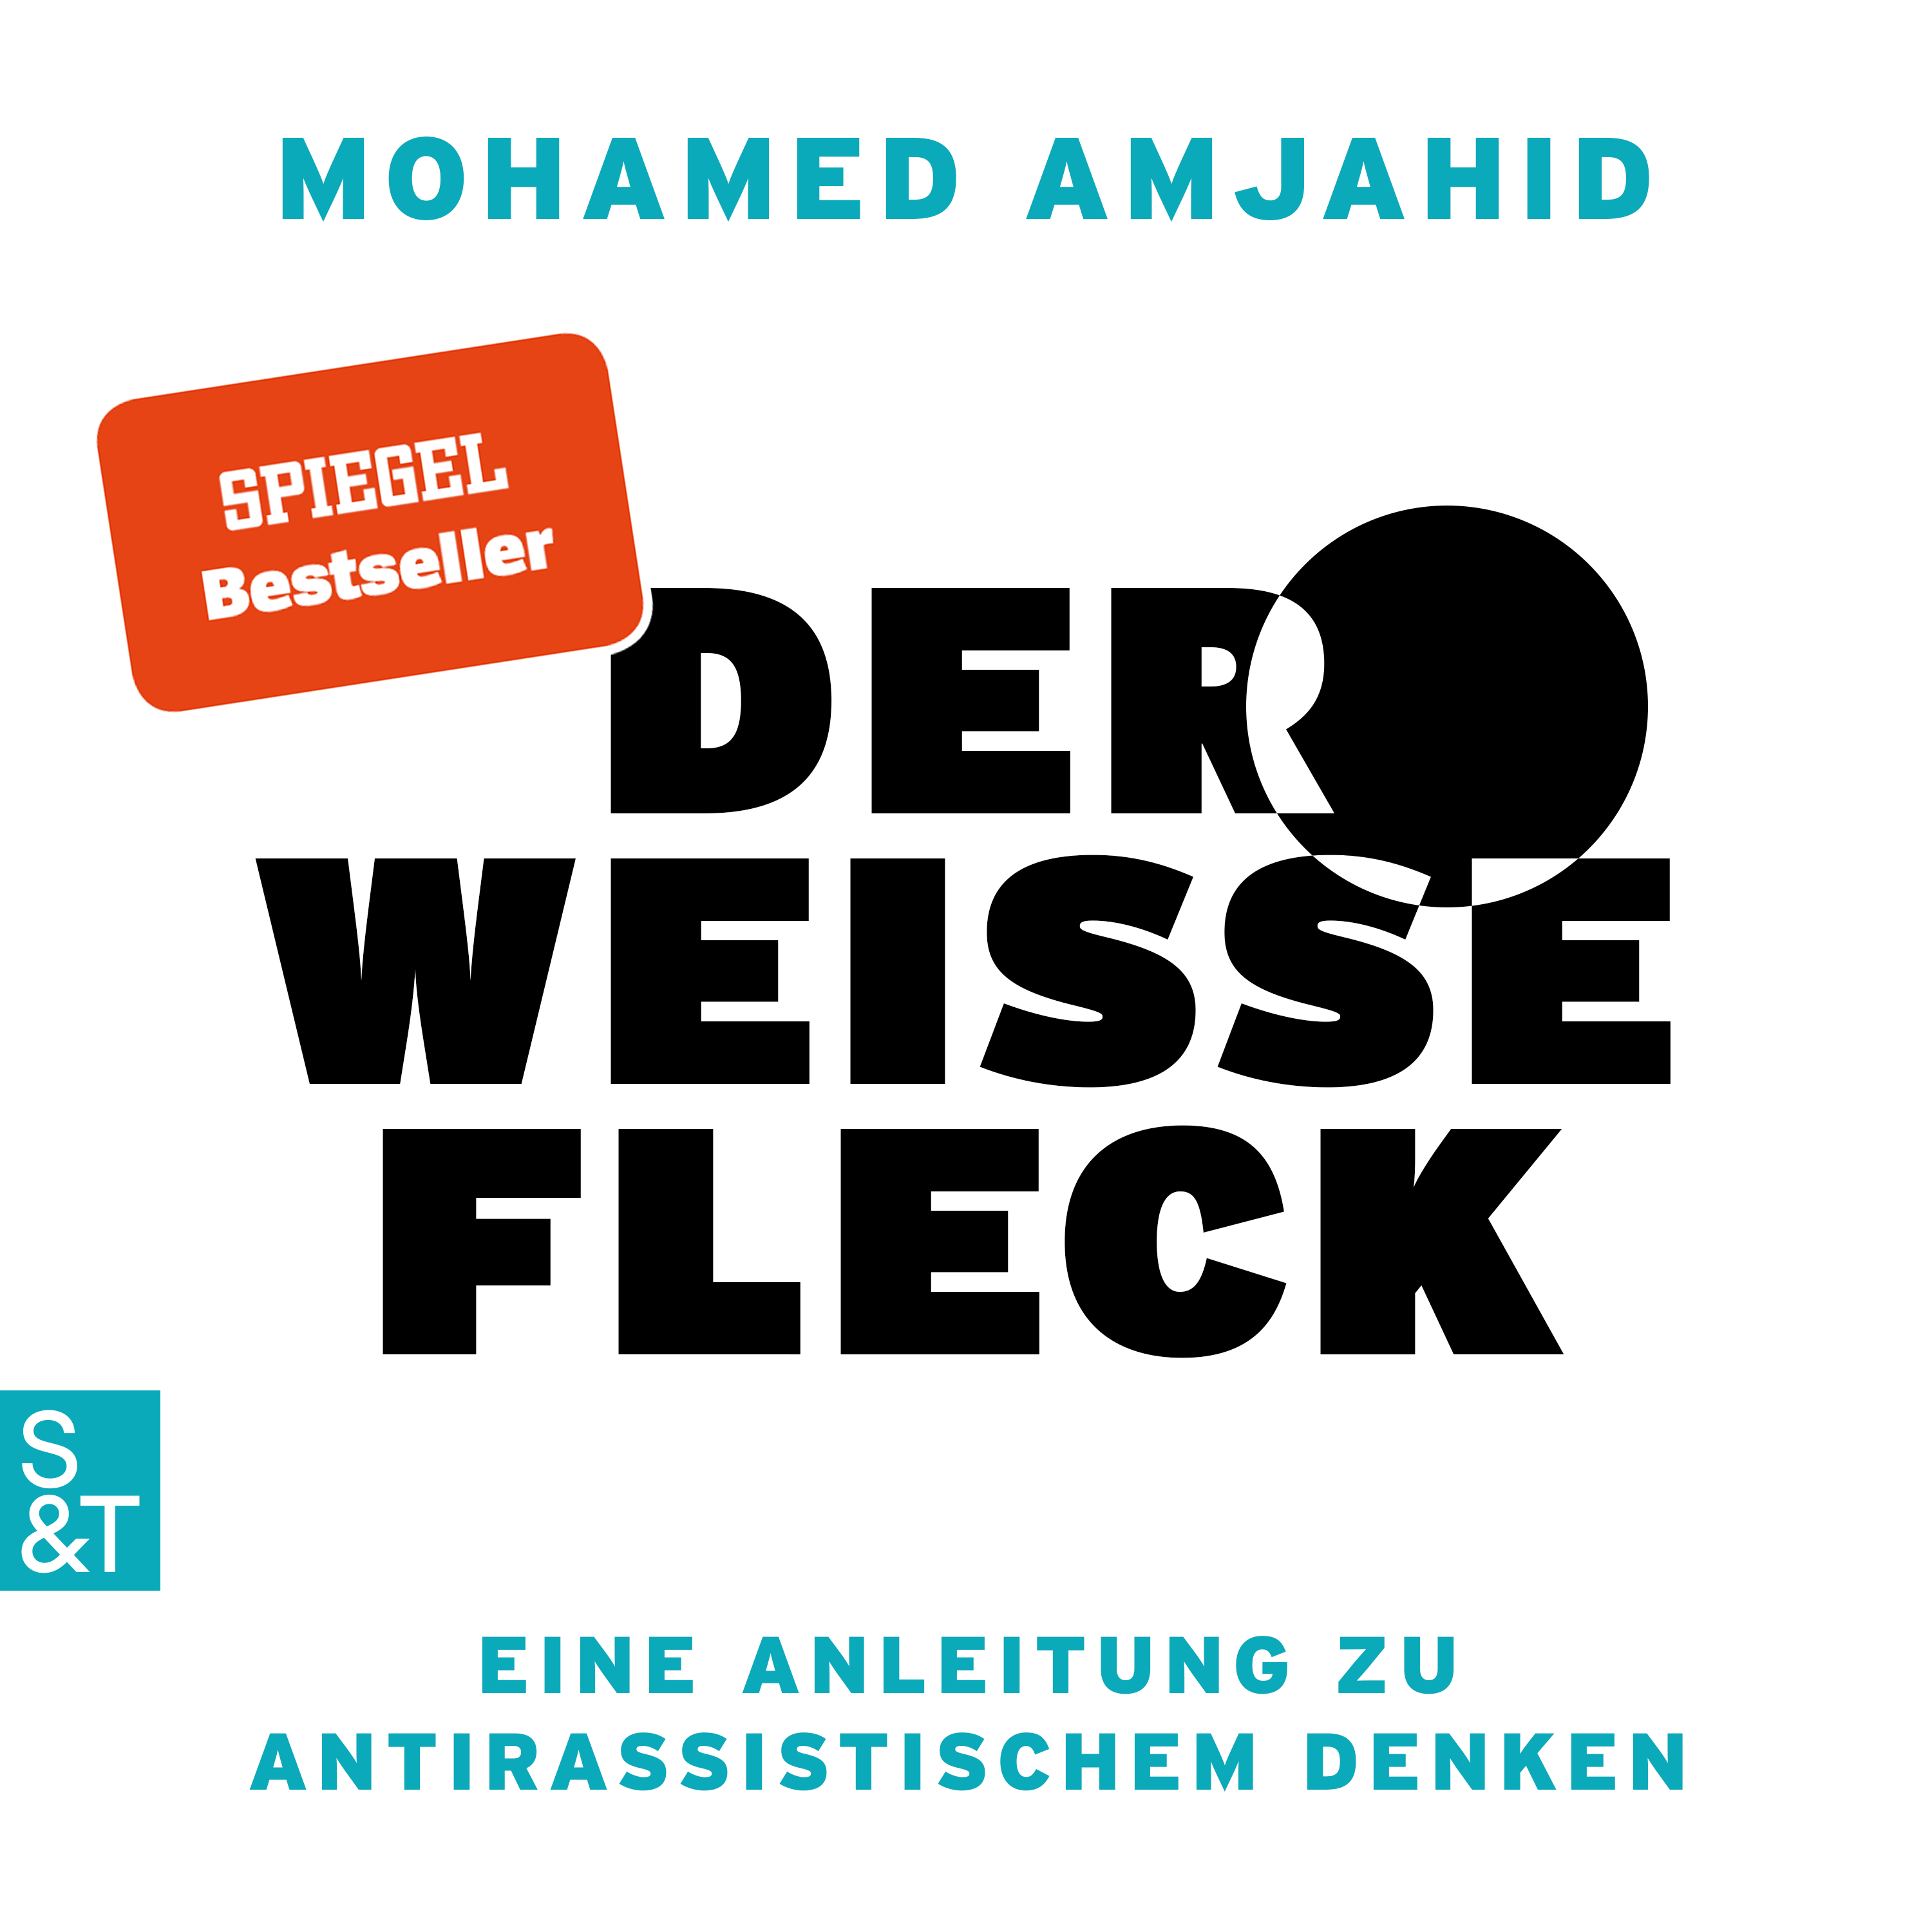 Hörbuchcover "Der weiße Fleck". Erschienen 2021 im Verlag Struck & Tatze.